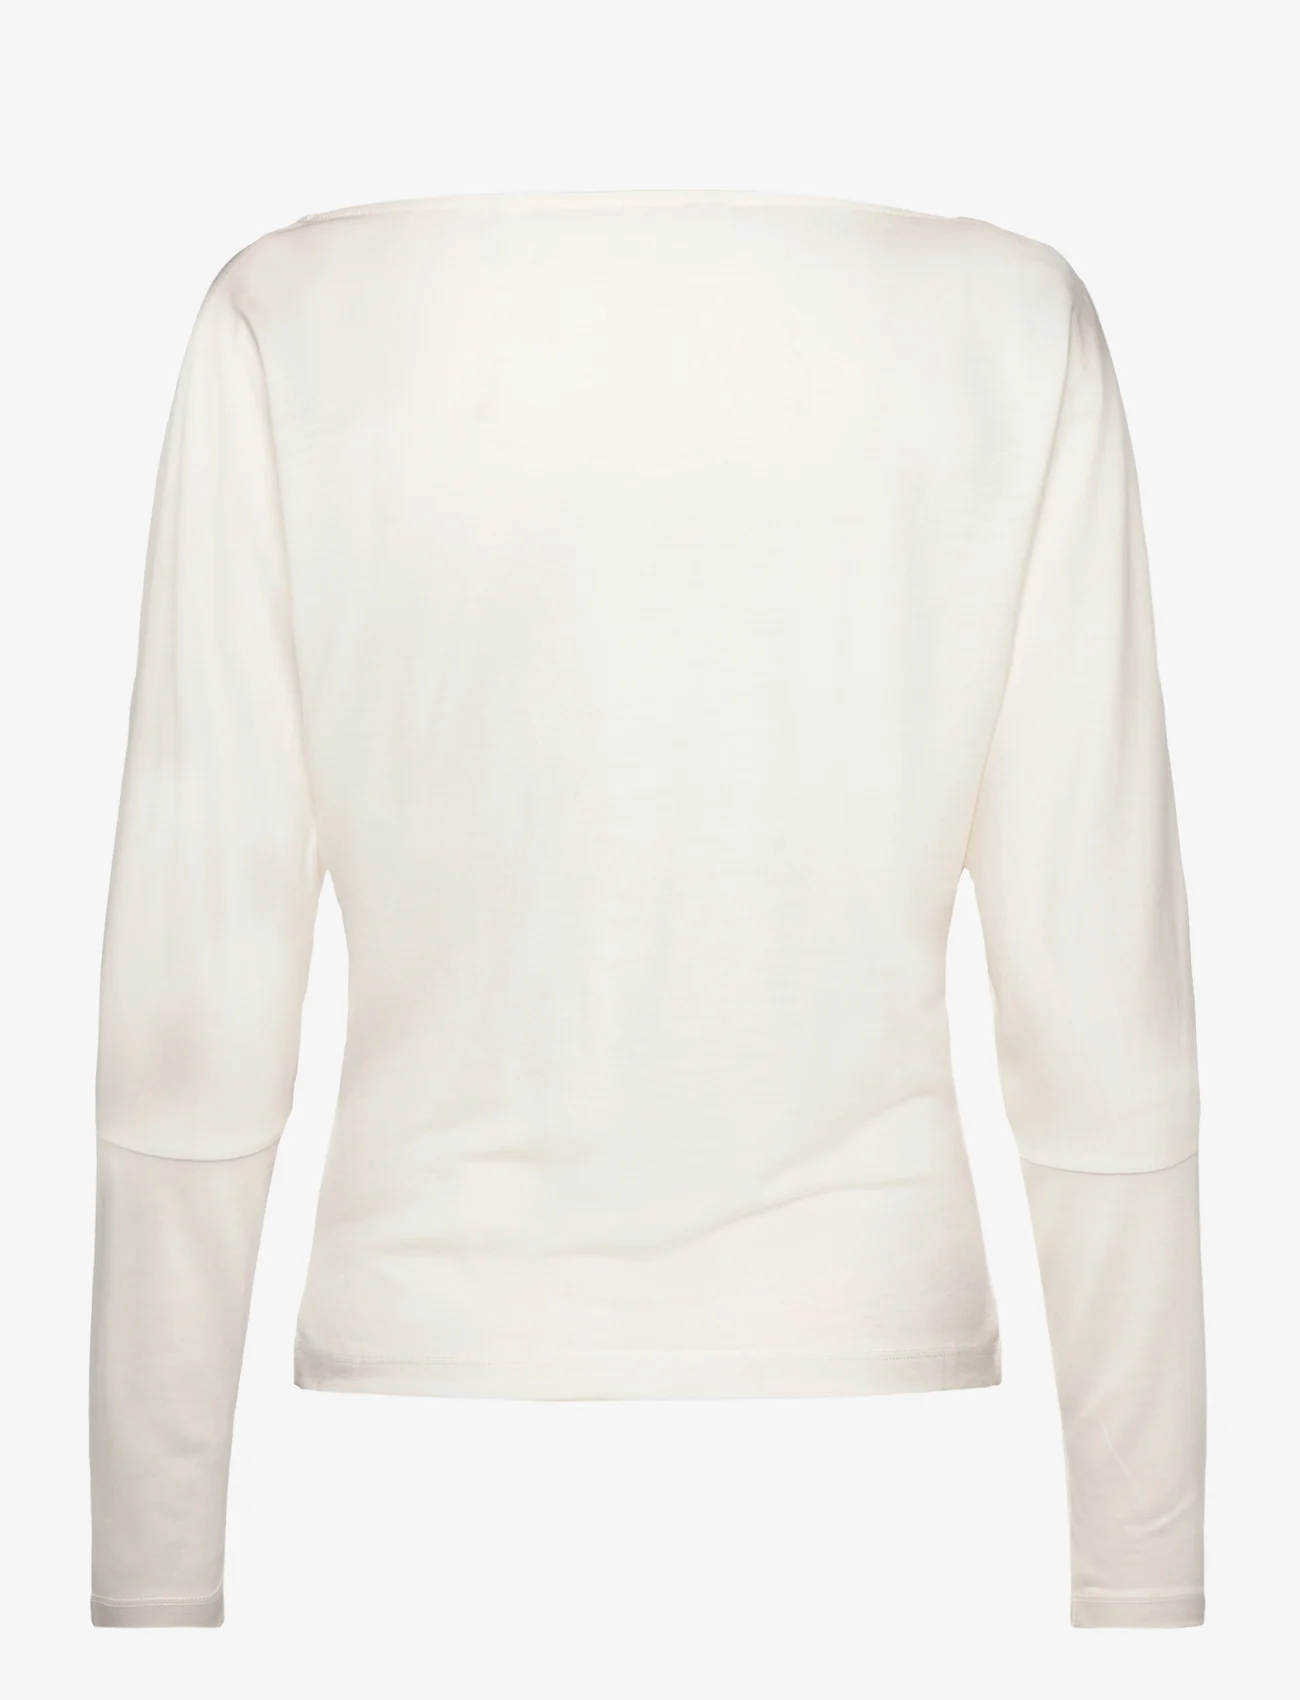 Esprit Casual - T-Shirts - tops met lange mouwen - ice - 1